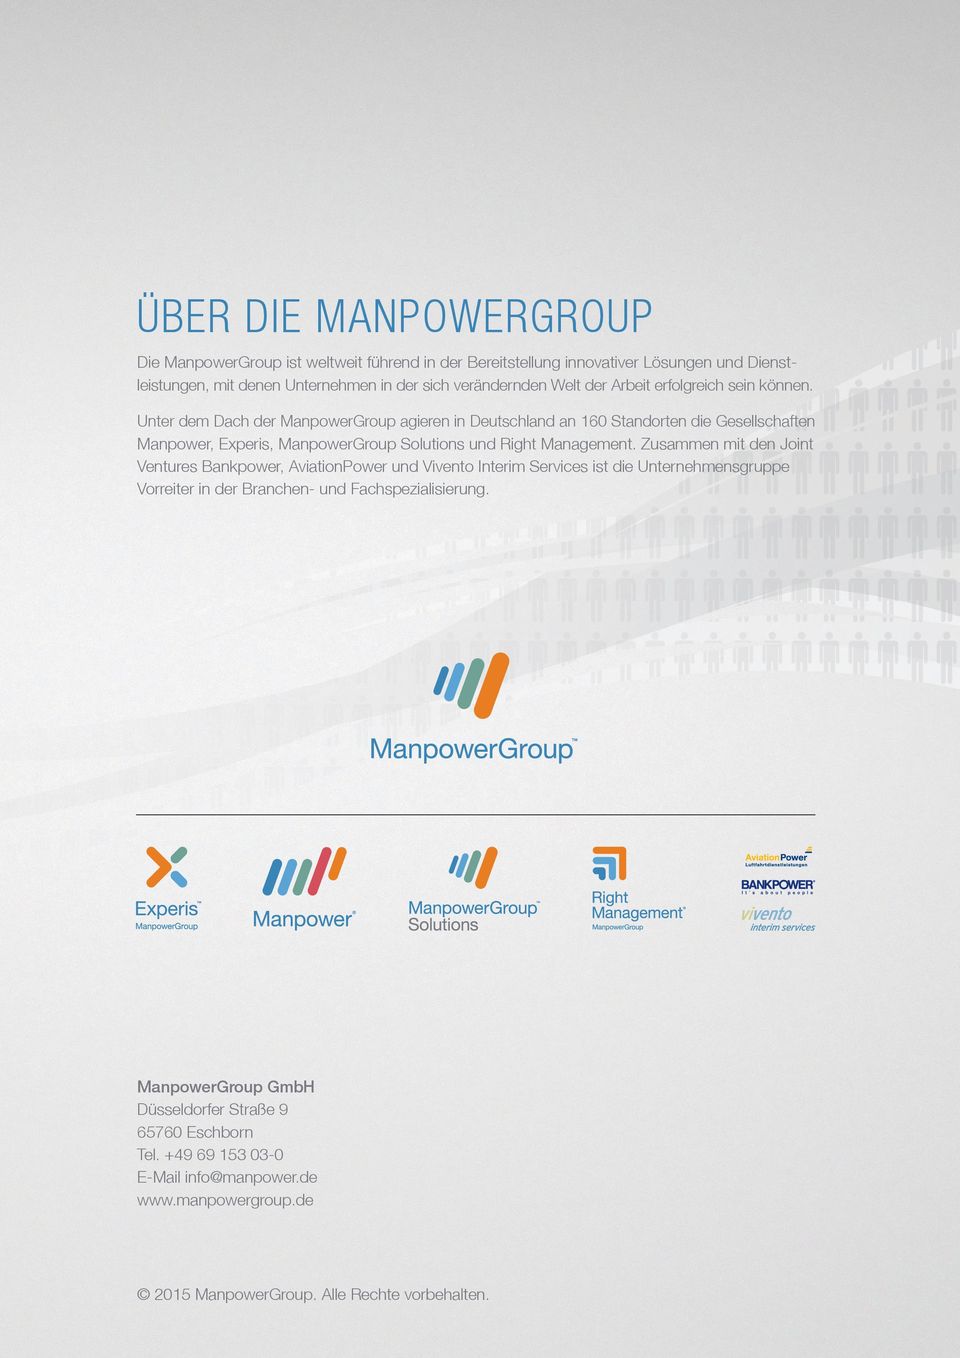 Unter dem Dach der ManpowerGroup agieren in Deutschland an 160 Standorten die Gesellschaften Manpower, Experis, ManpowerGroup Solutions und Right Management.